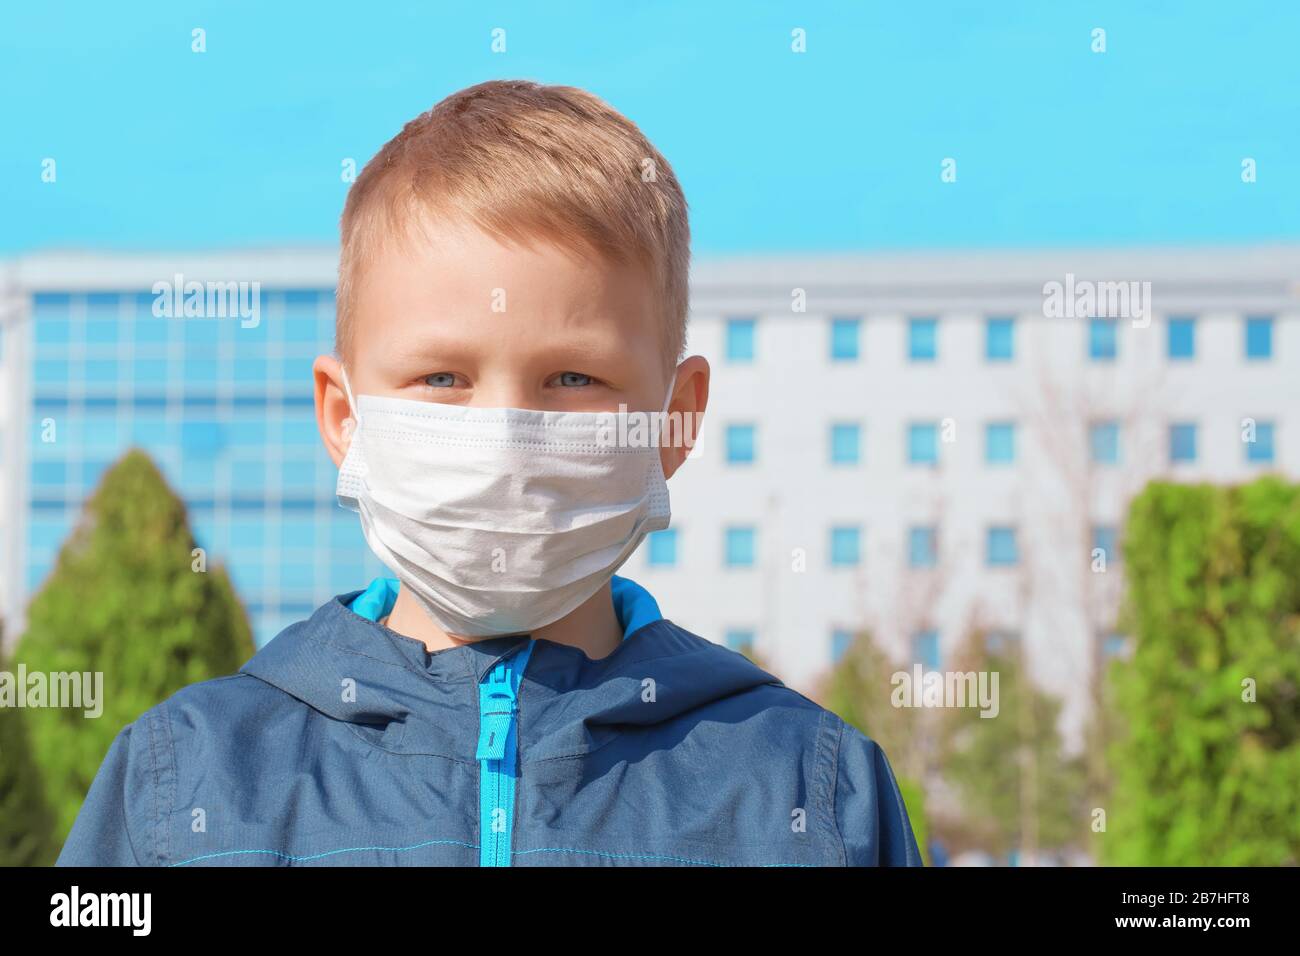 Triste ragazzo europeo in una maschera medica protettiva all'aperto sullo sfondo dell'ospedale. Prevenzione delle infezioni virali, concetto di protezione dai virus Foto Stock